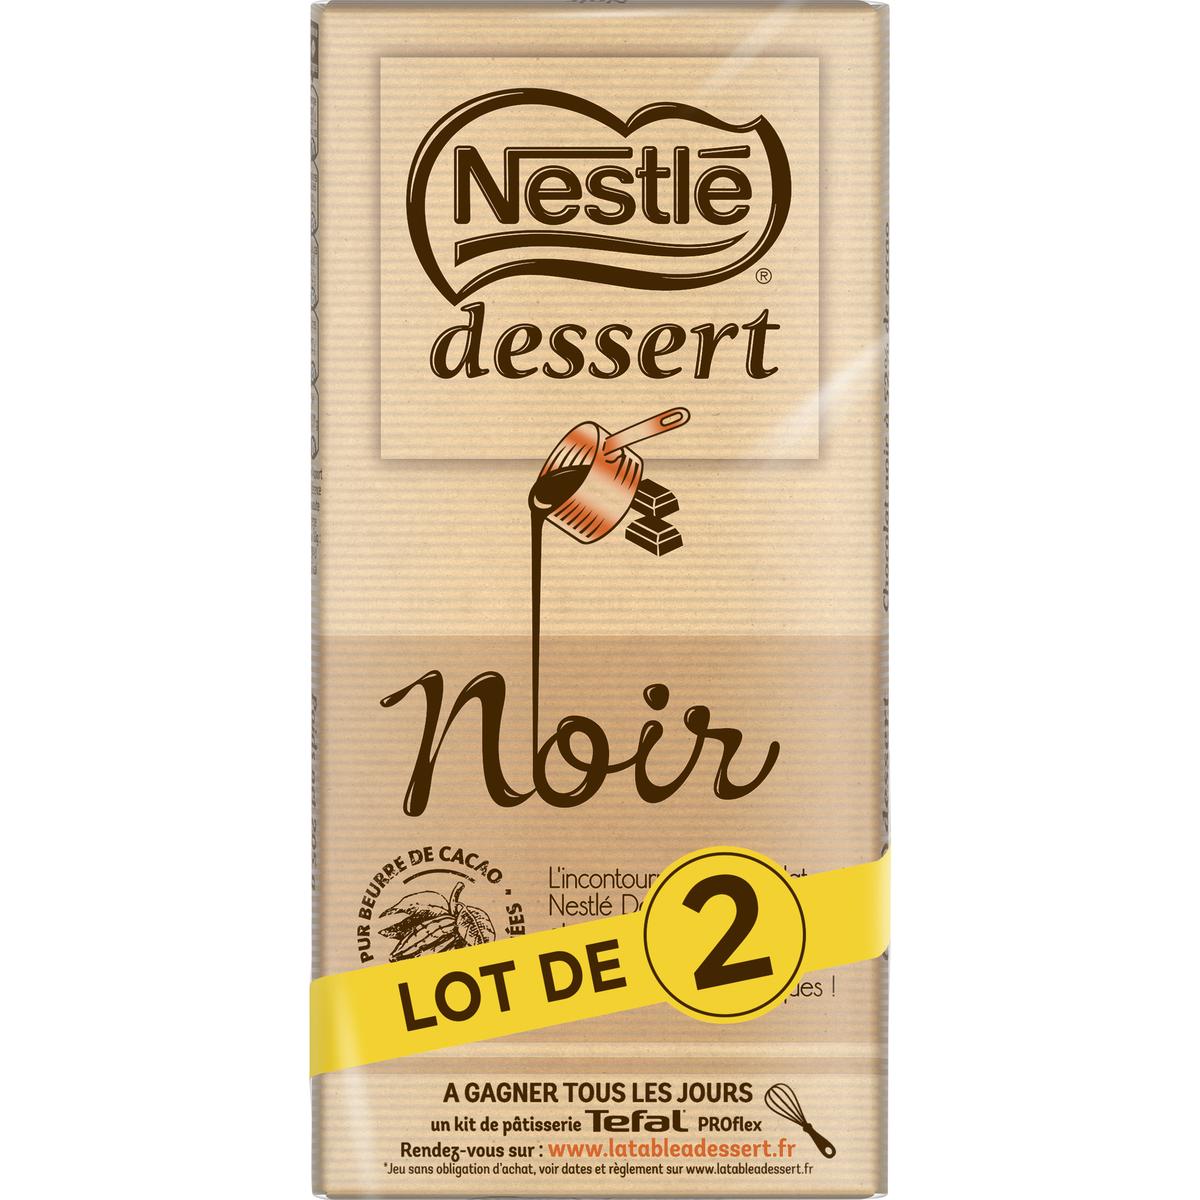 Achat / Vente Nestlé Dessert Chocolat pâtissier noir, Lot de 2x205g